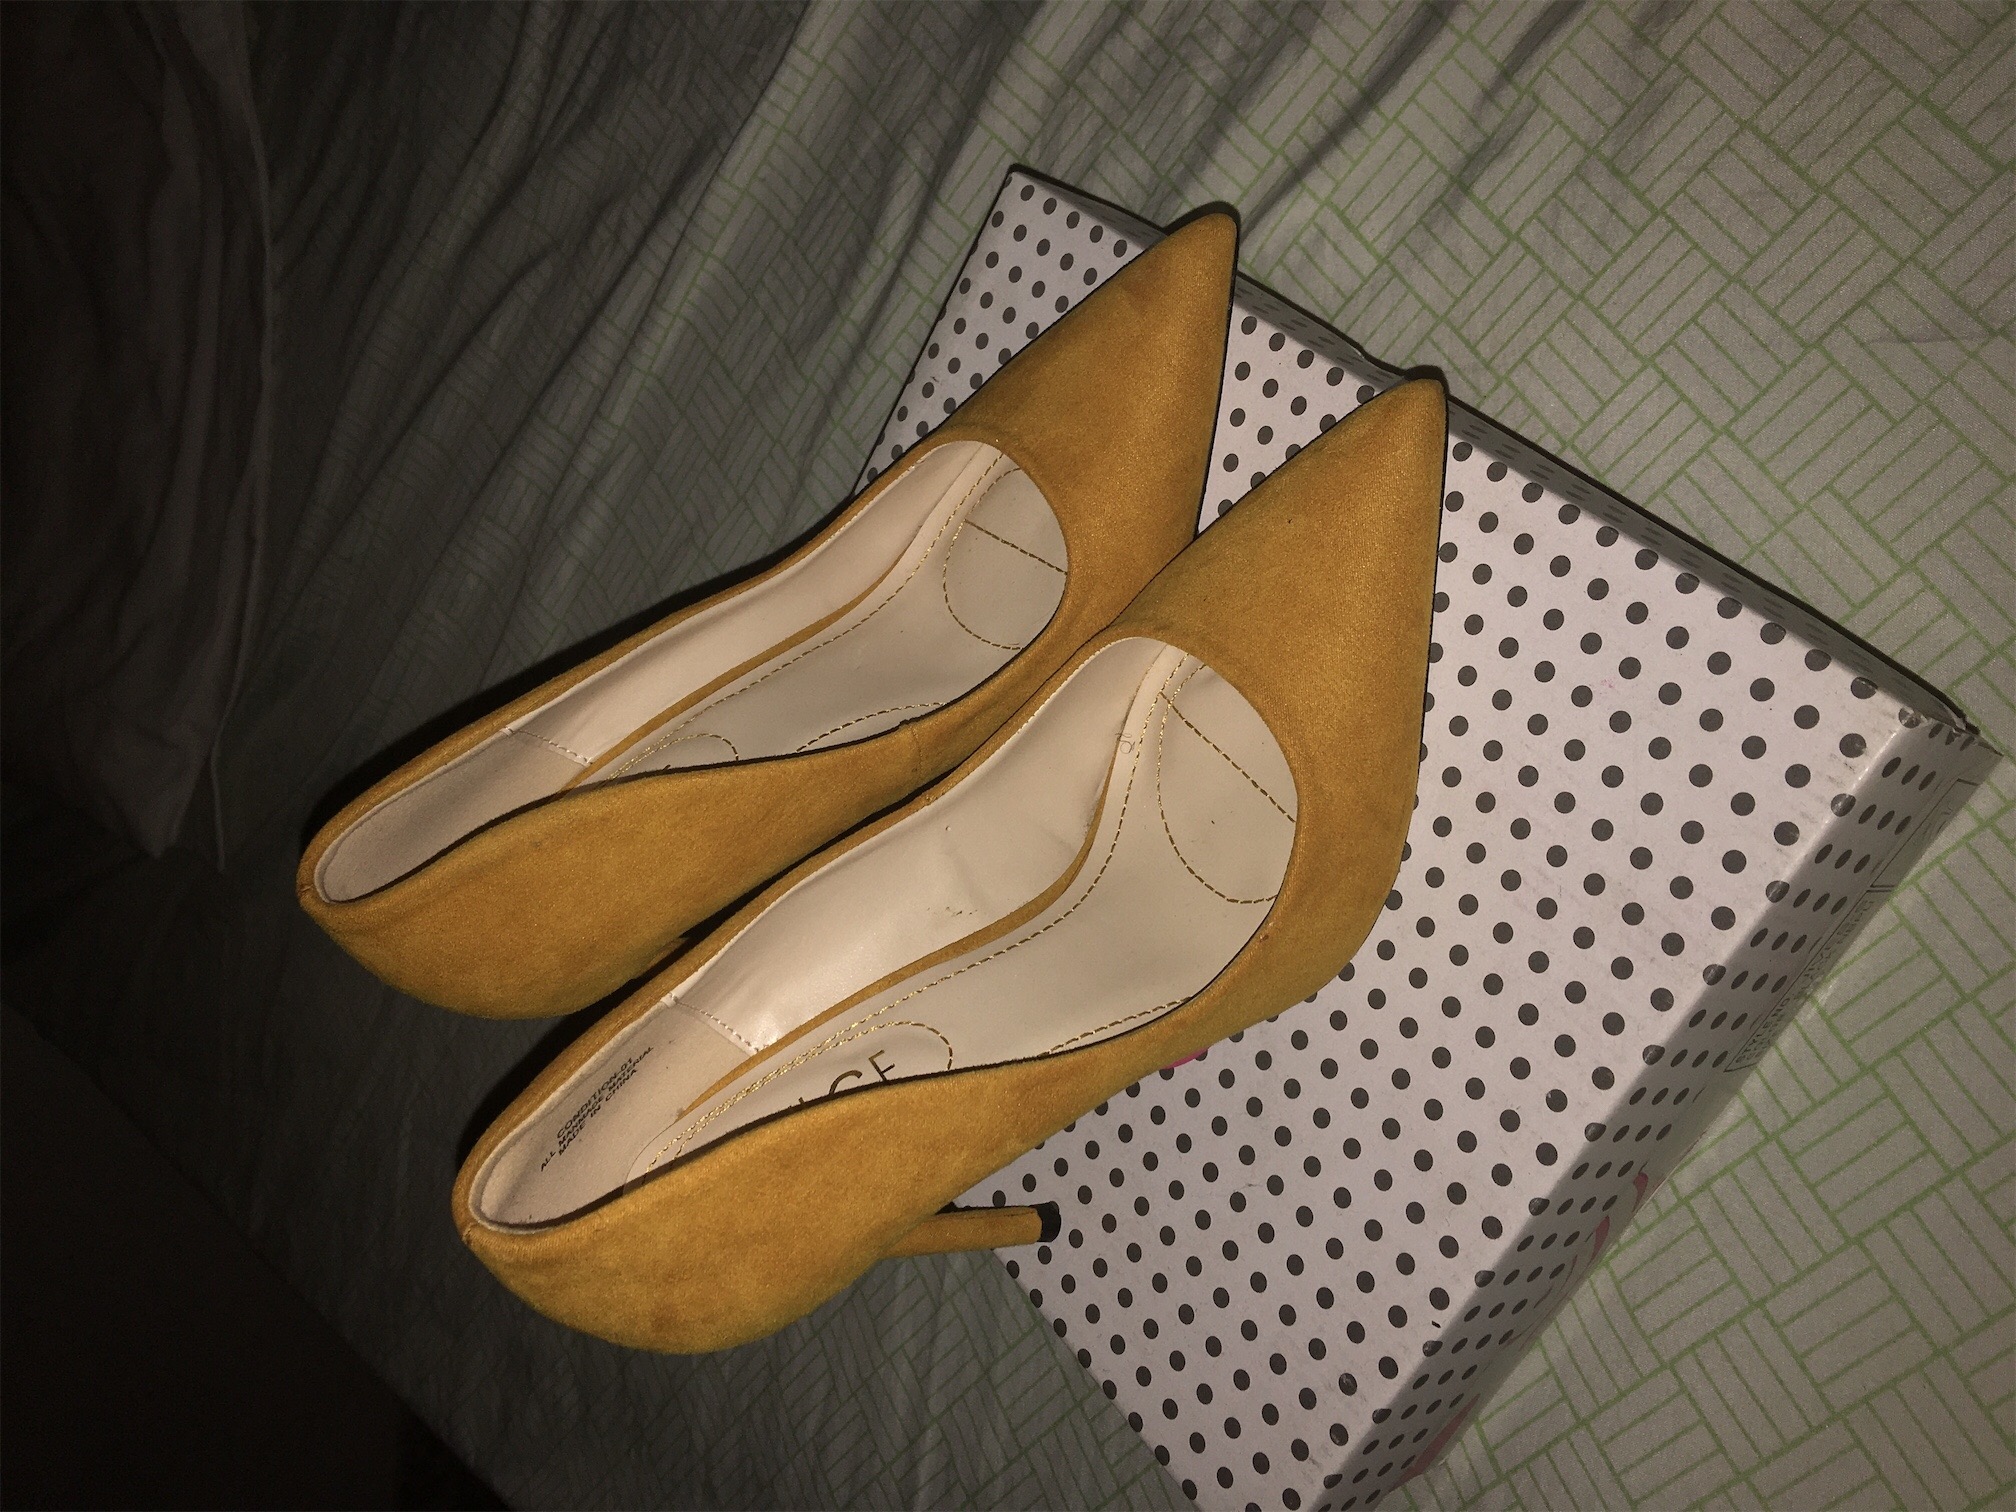 zapatos para mujer - 1,000 zapatos nuevos en pana amarillos